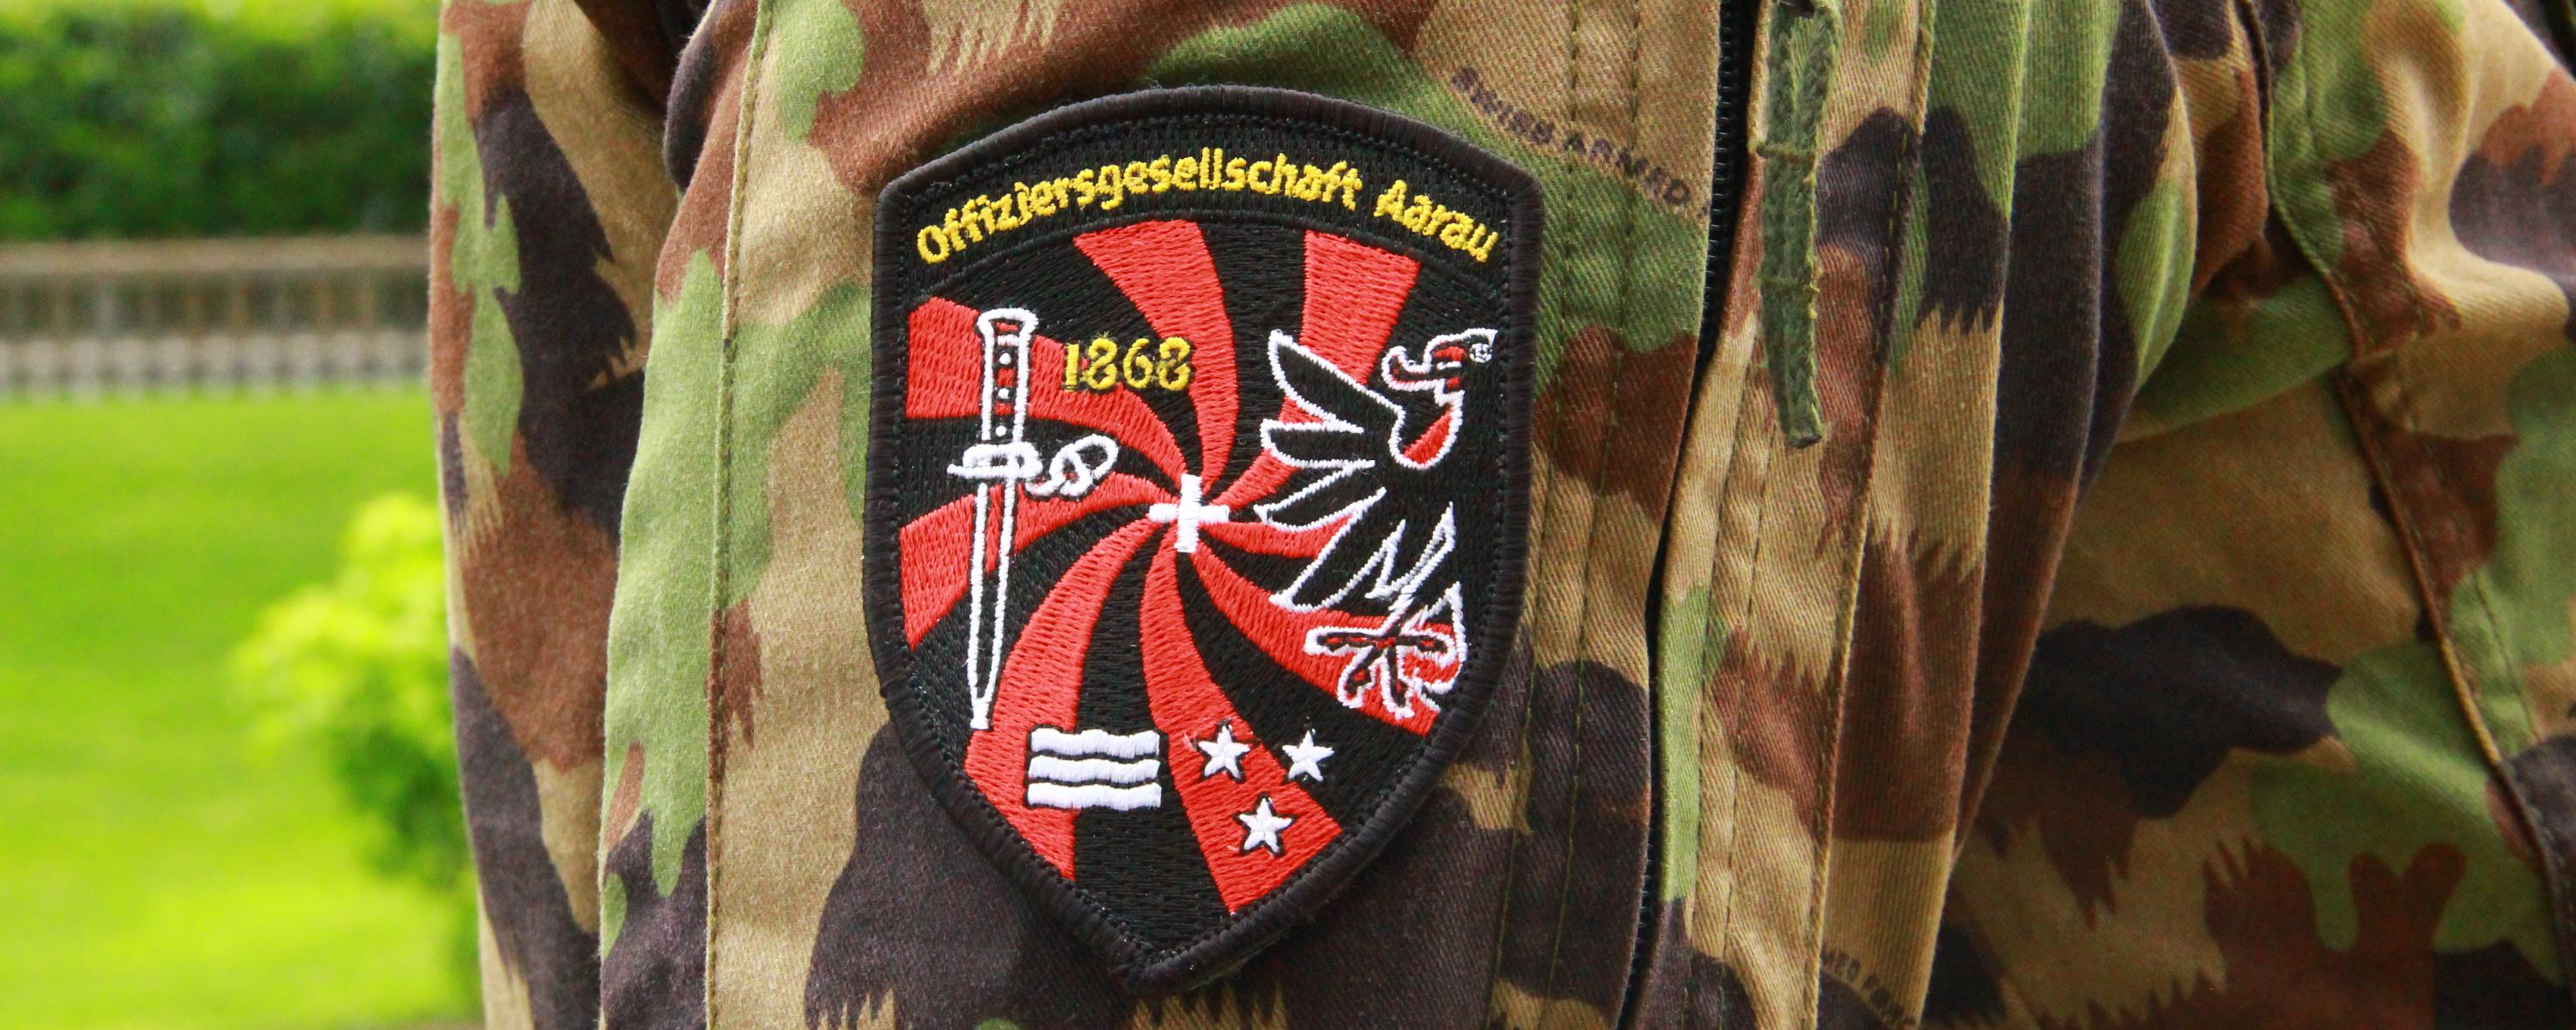 Ein Badge der Offiziersgesellschaft Aarau auf einem Tarnanzug.